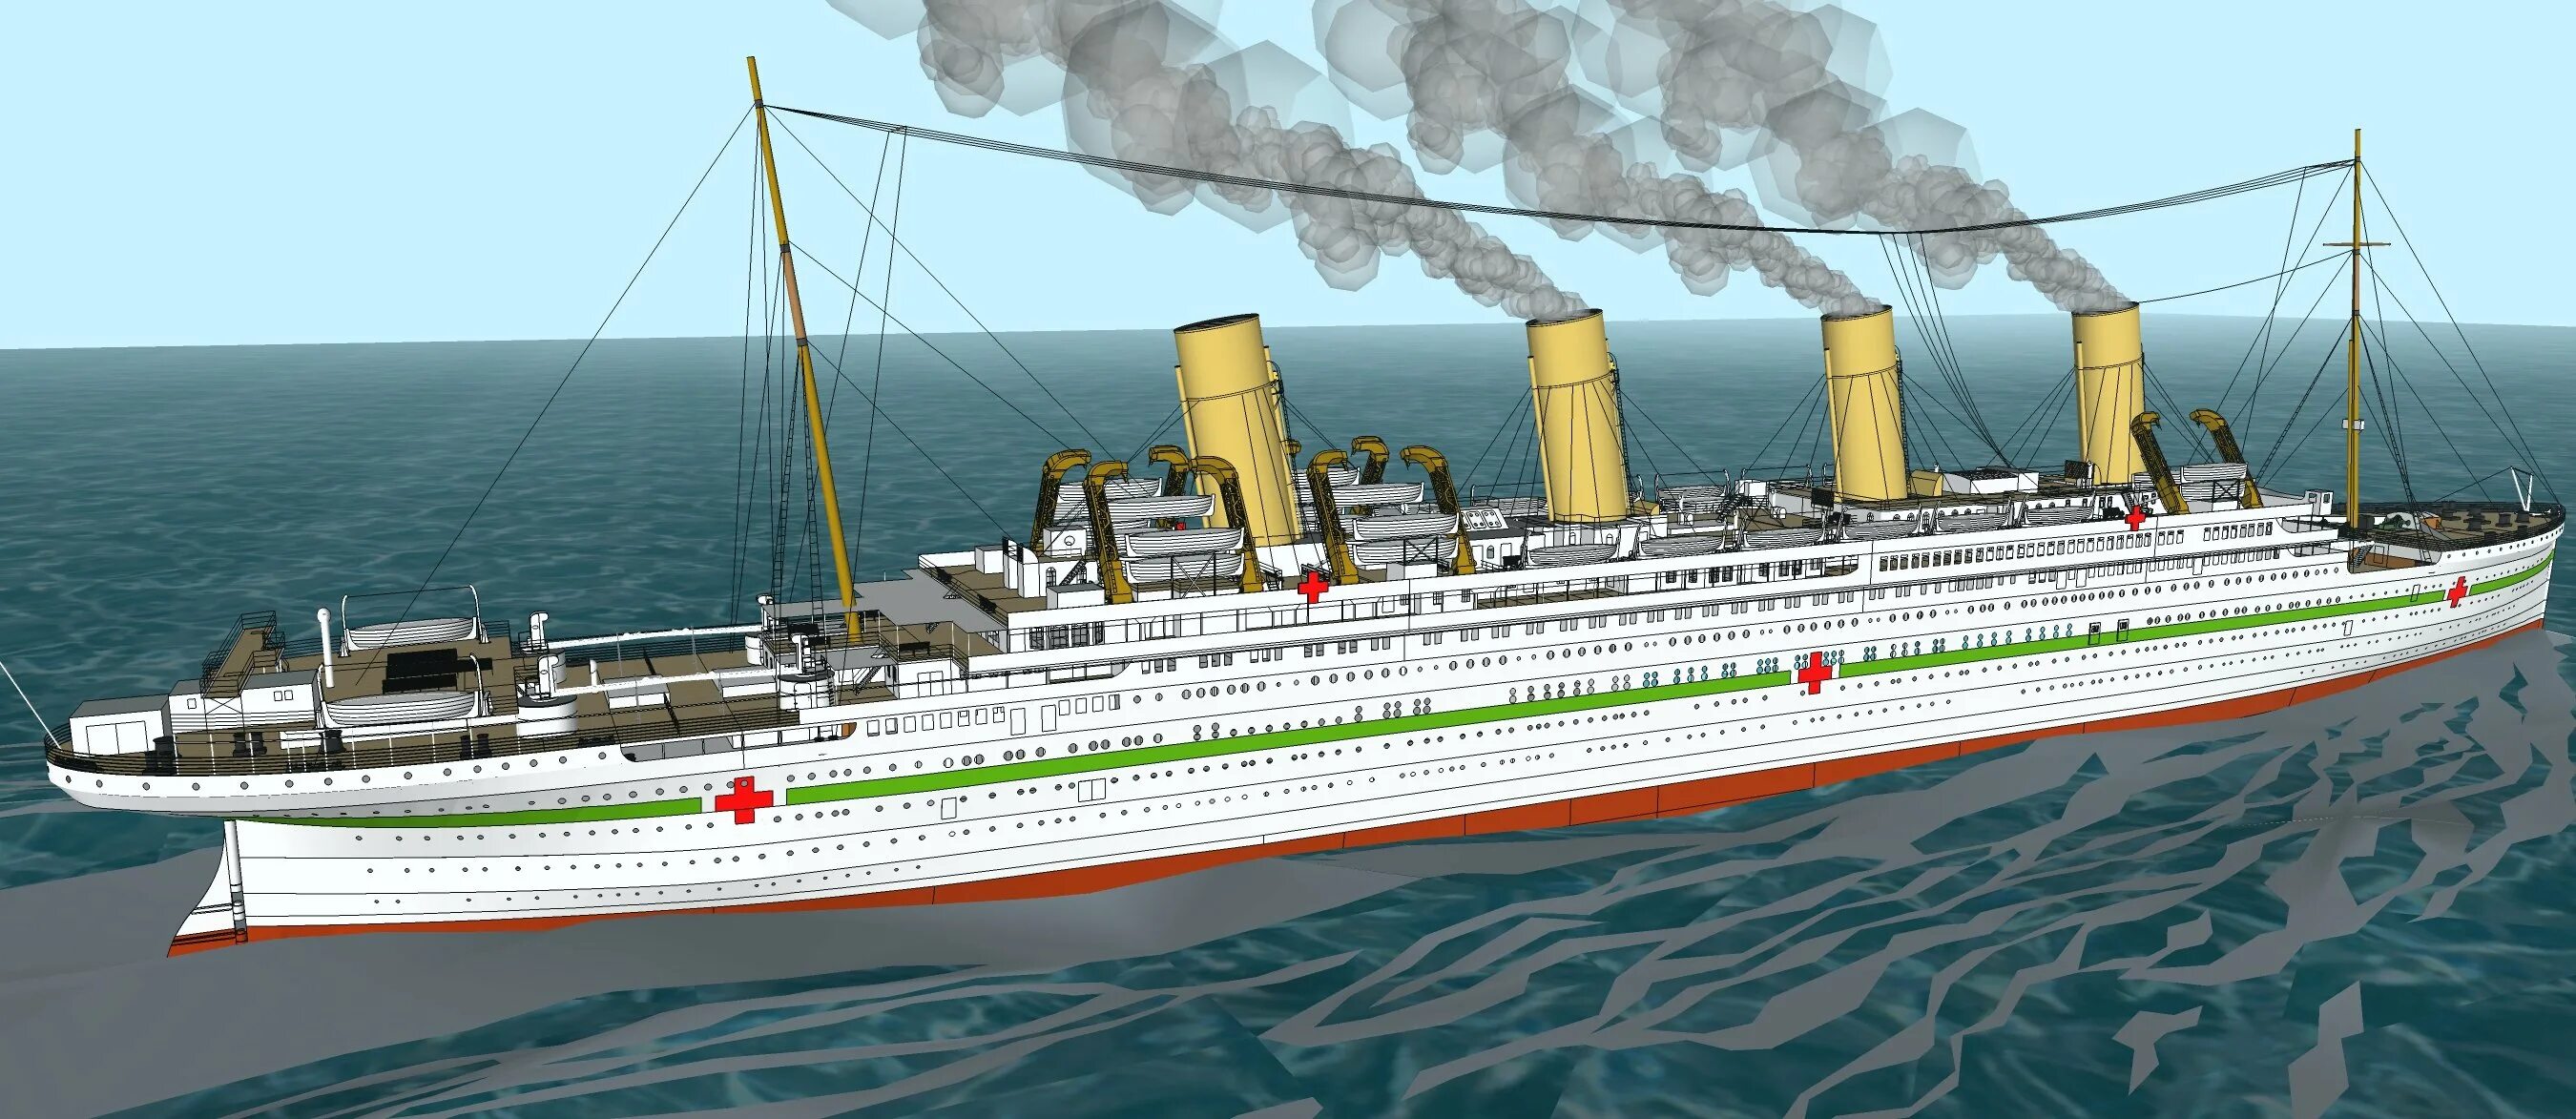 Включи олимпик. Британик корабль. Олимпик Титаник Британик. Лайнер Британик. 3 Корабля Титаник Британик Олимпик.